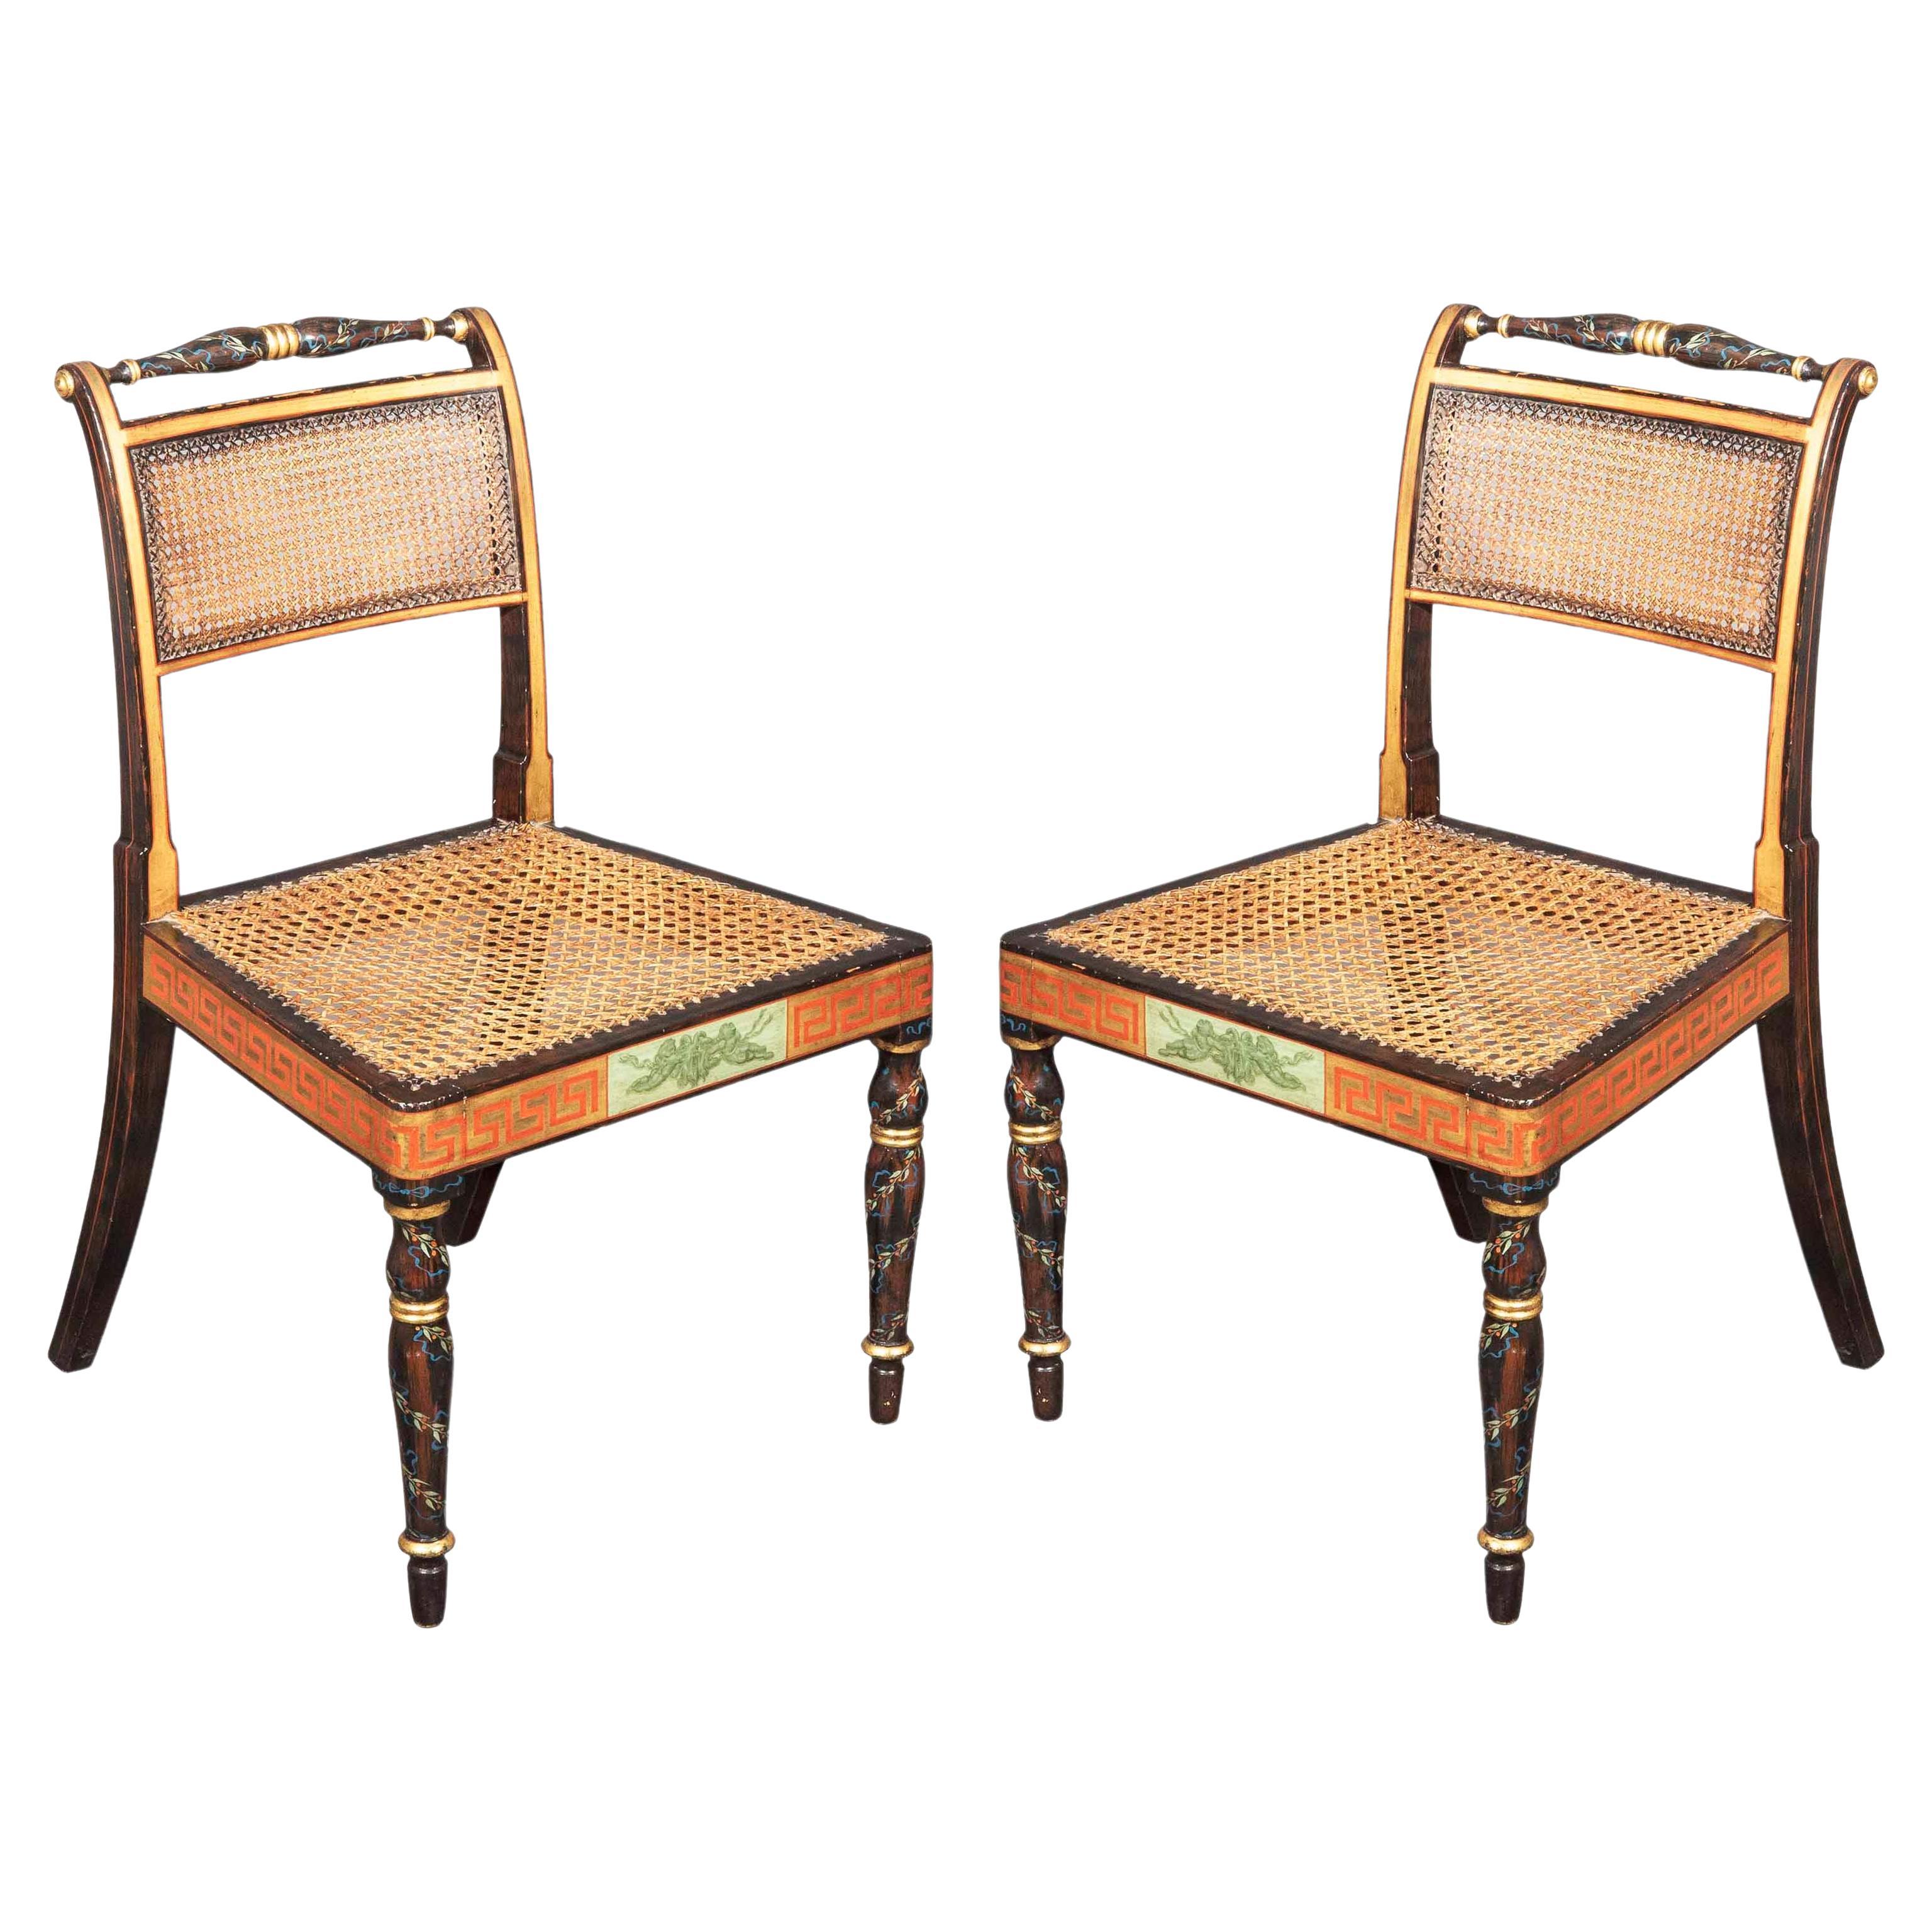 Georgianische Regency-Stühle im Regency-Stil, bemalt, 3 Paare verfügbar